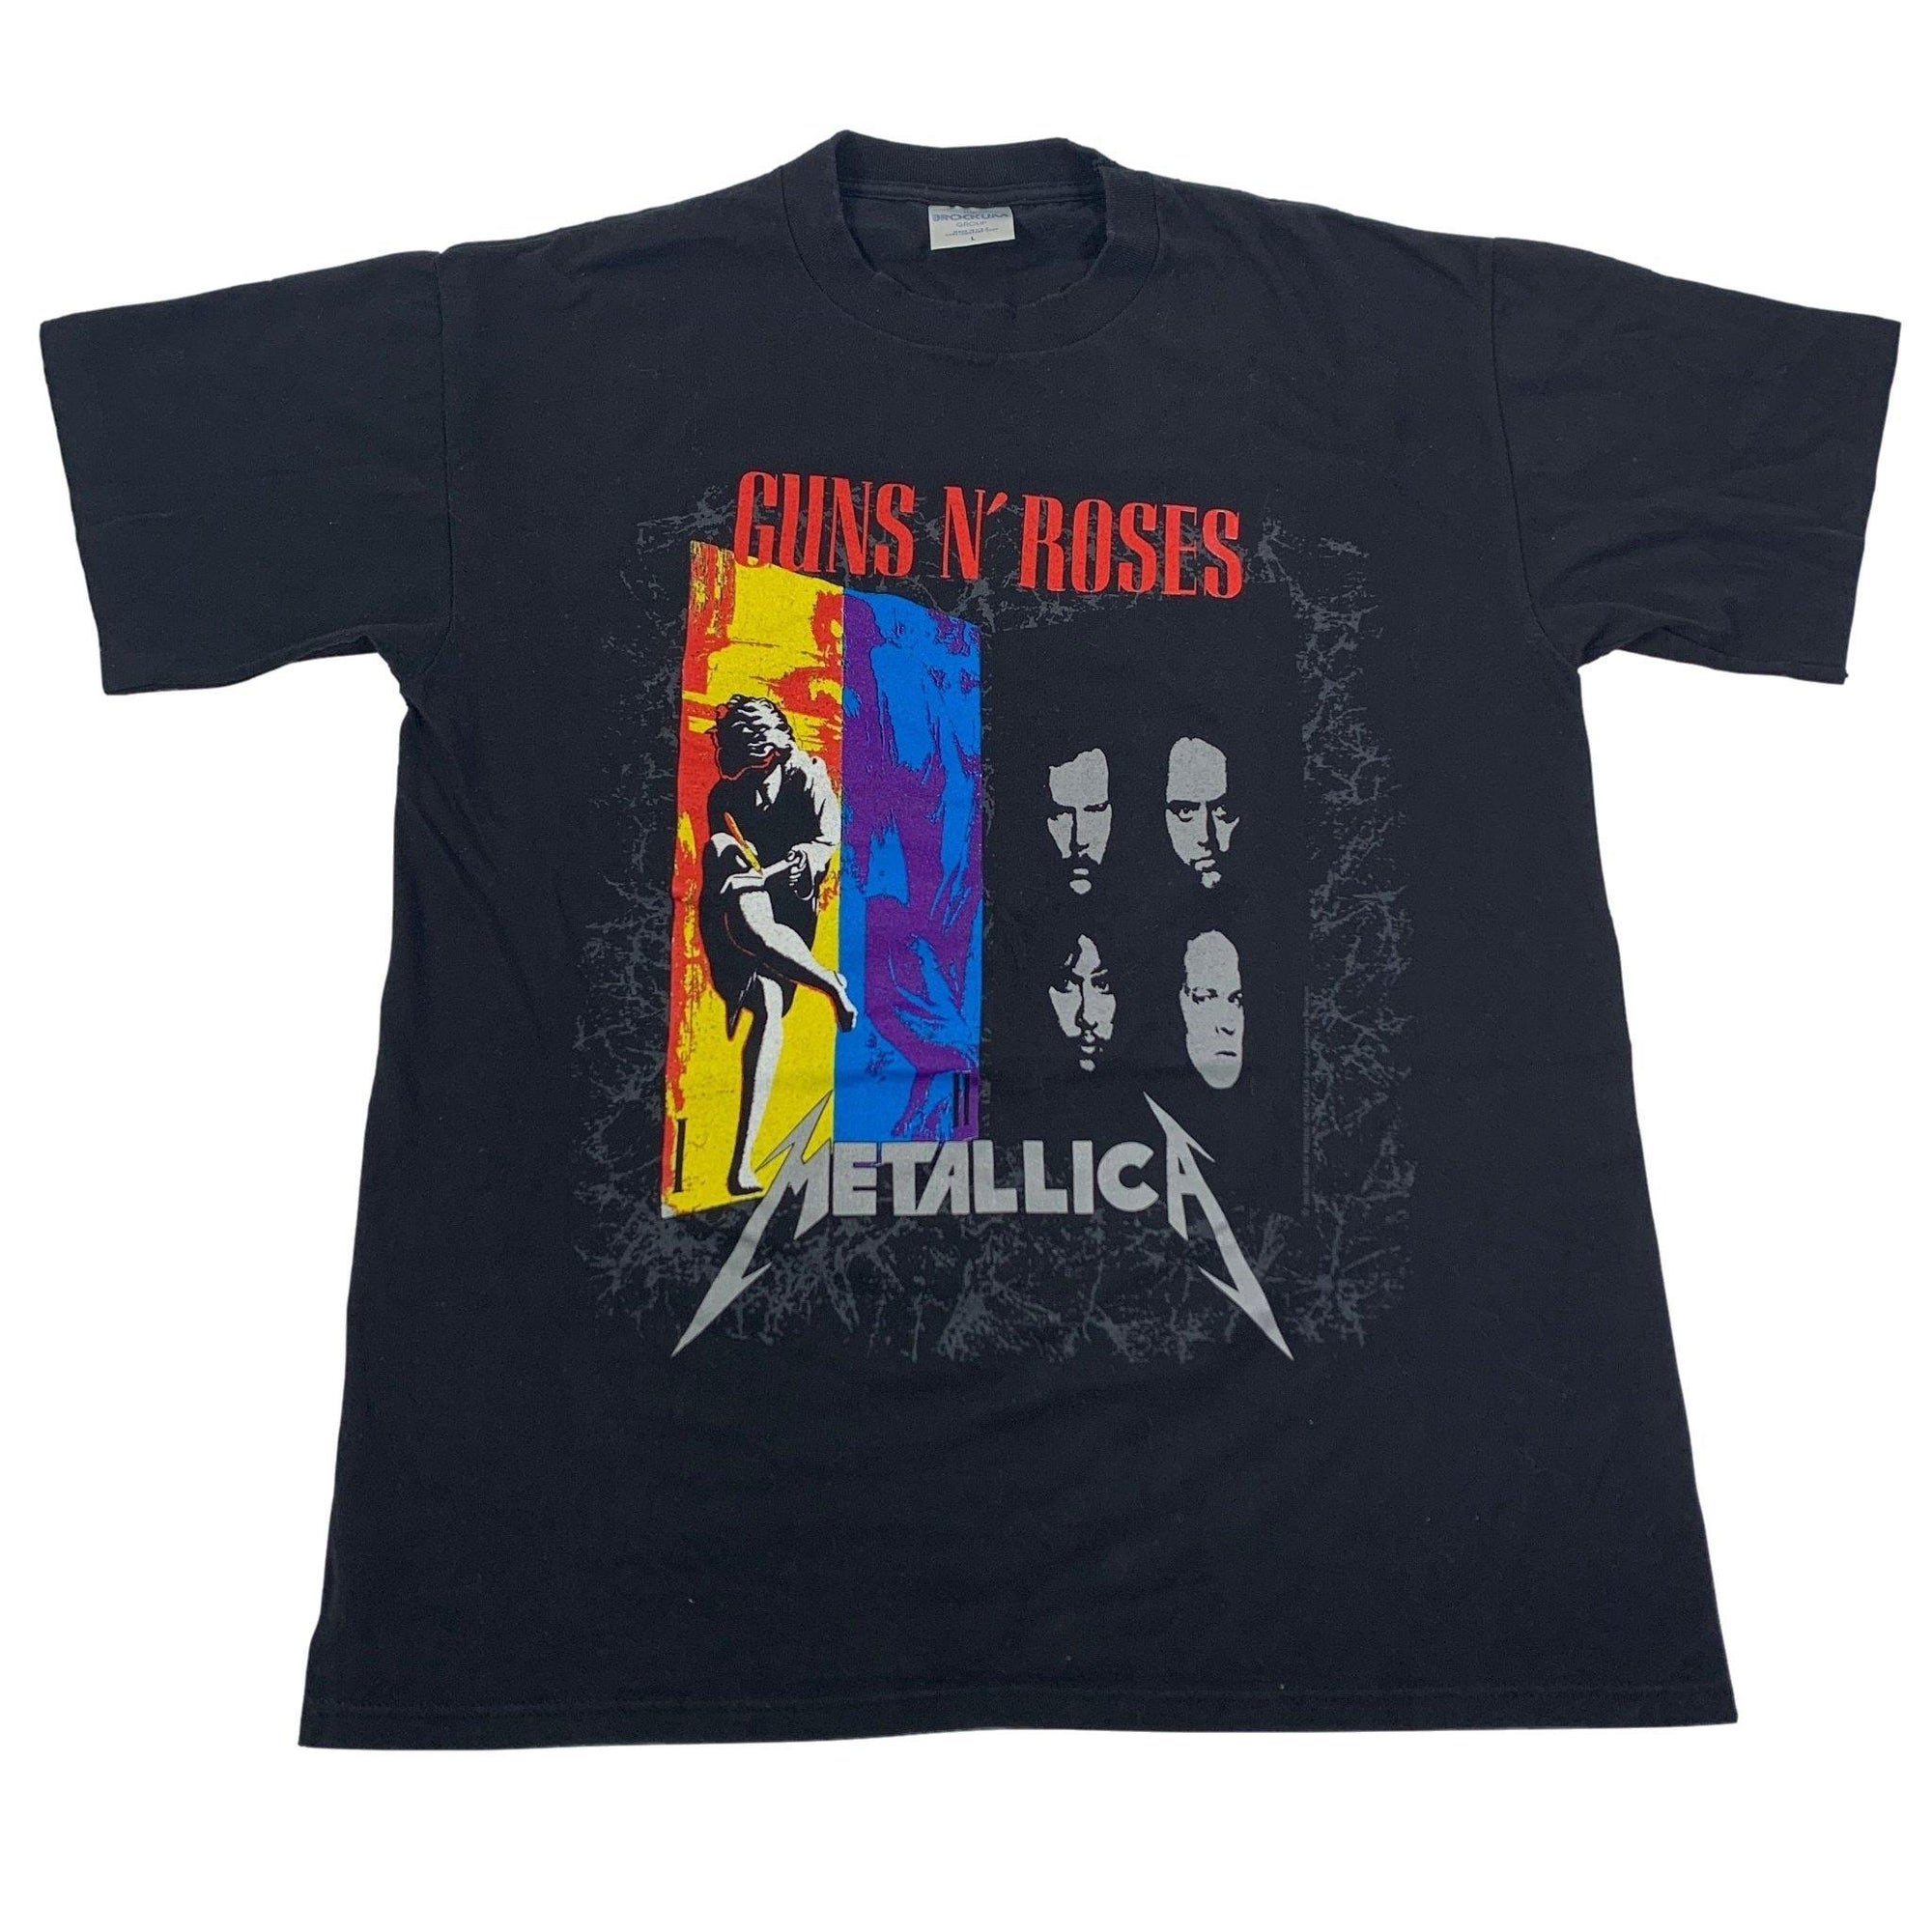 Vintage Guns N' Roses / Metallica "1992" Tour T-Shirt - jointcustodydc